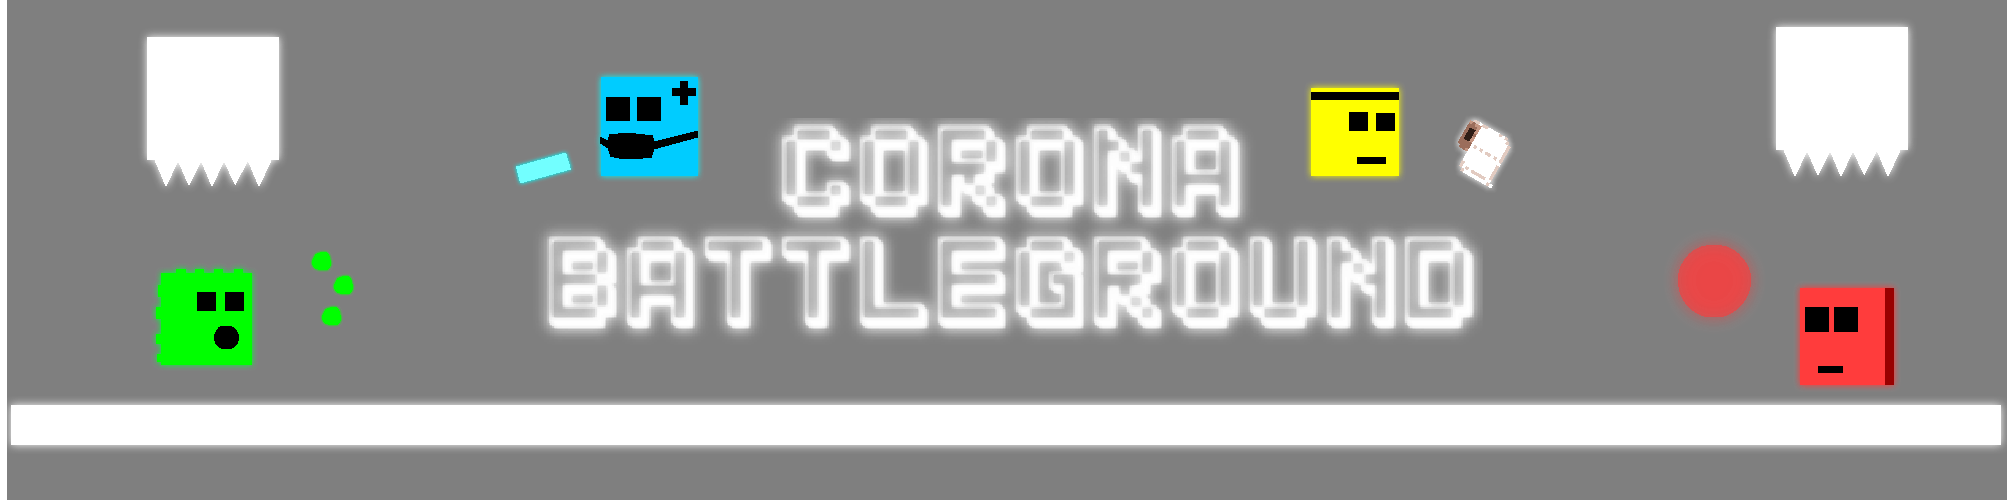 Corona Battleground